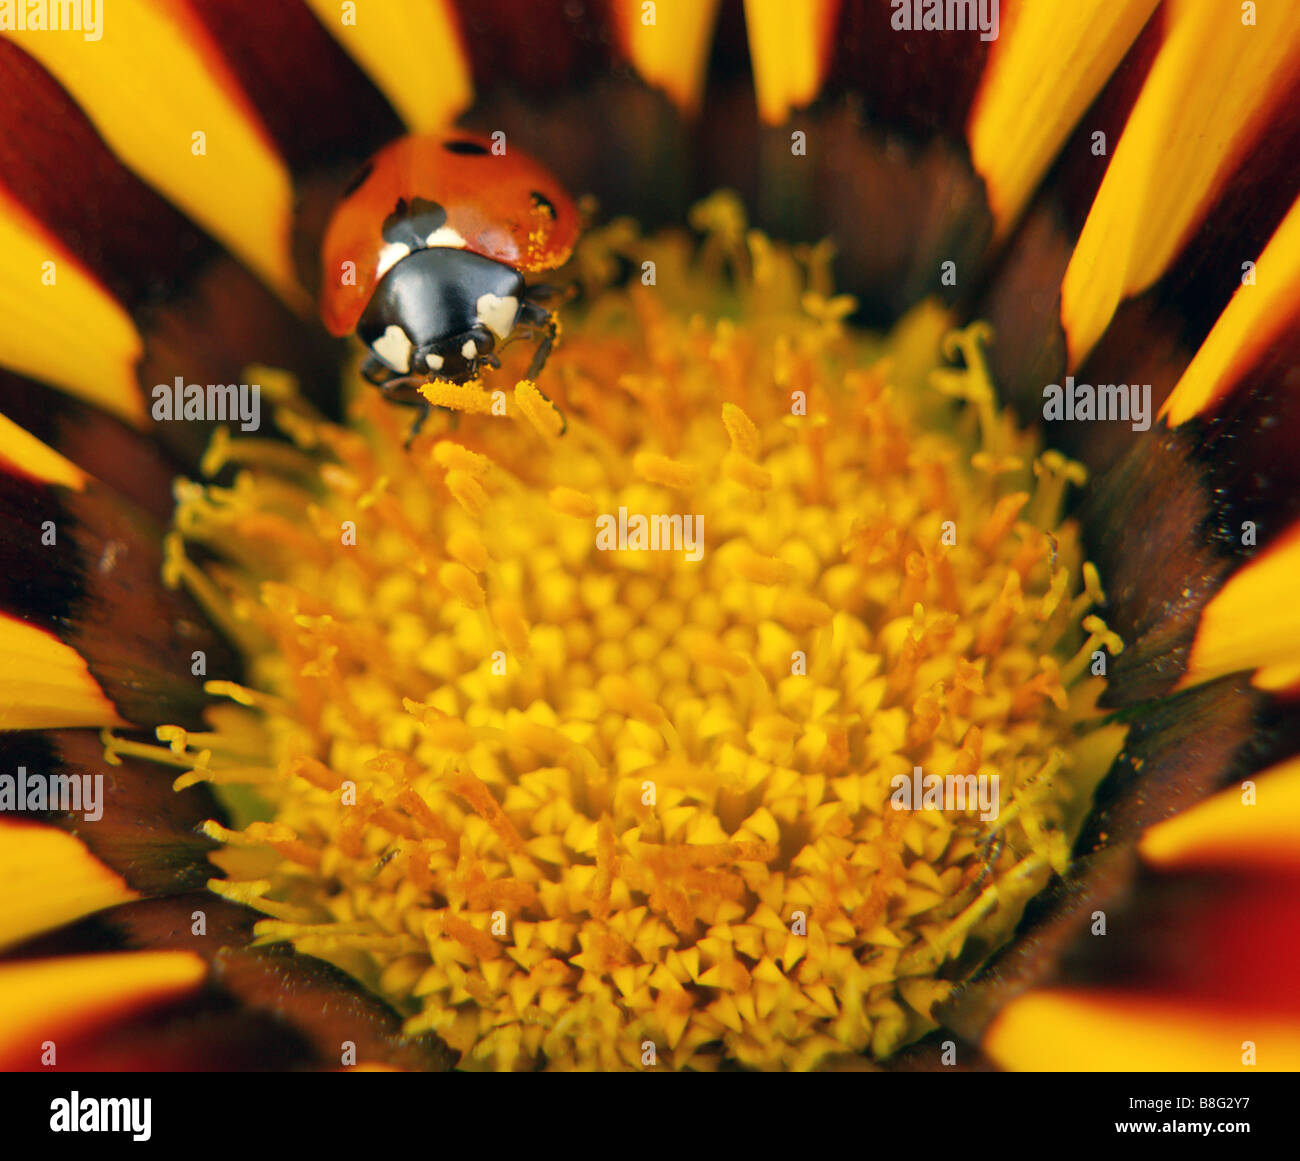 Nahaufnahme von 7 (sieben) Spot Ladybird auf einem bunten gelb gestreift Gazanien Blume. Stockfoto